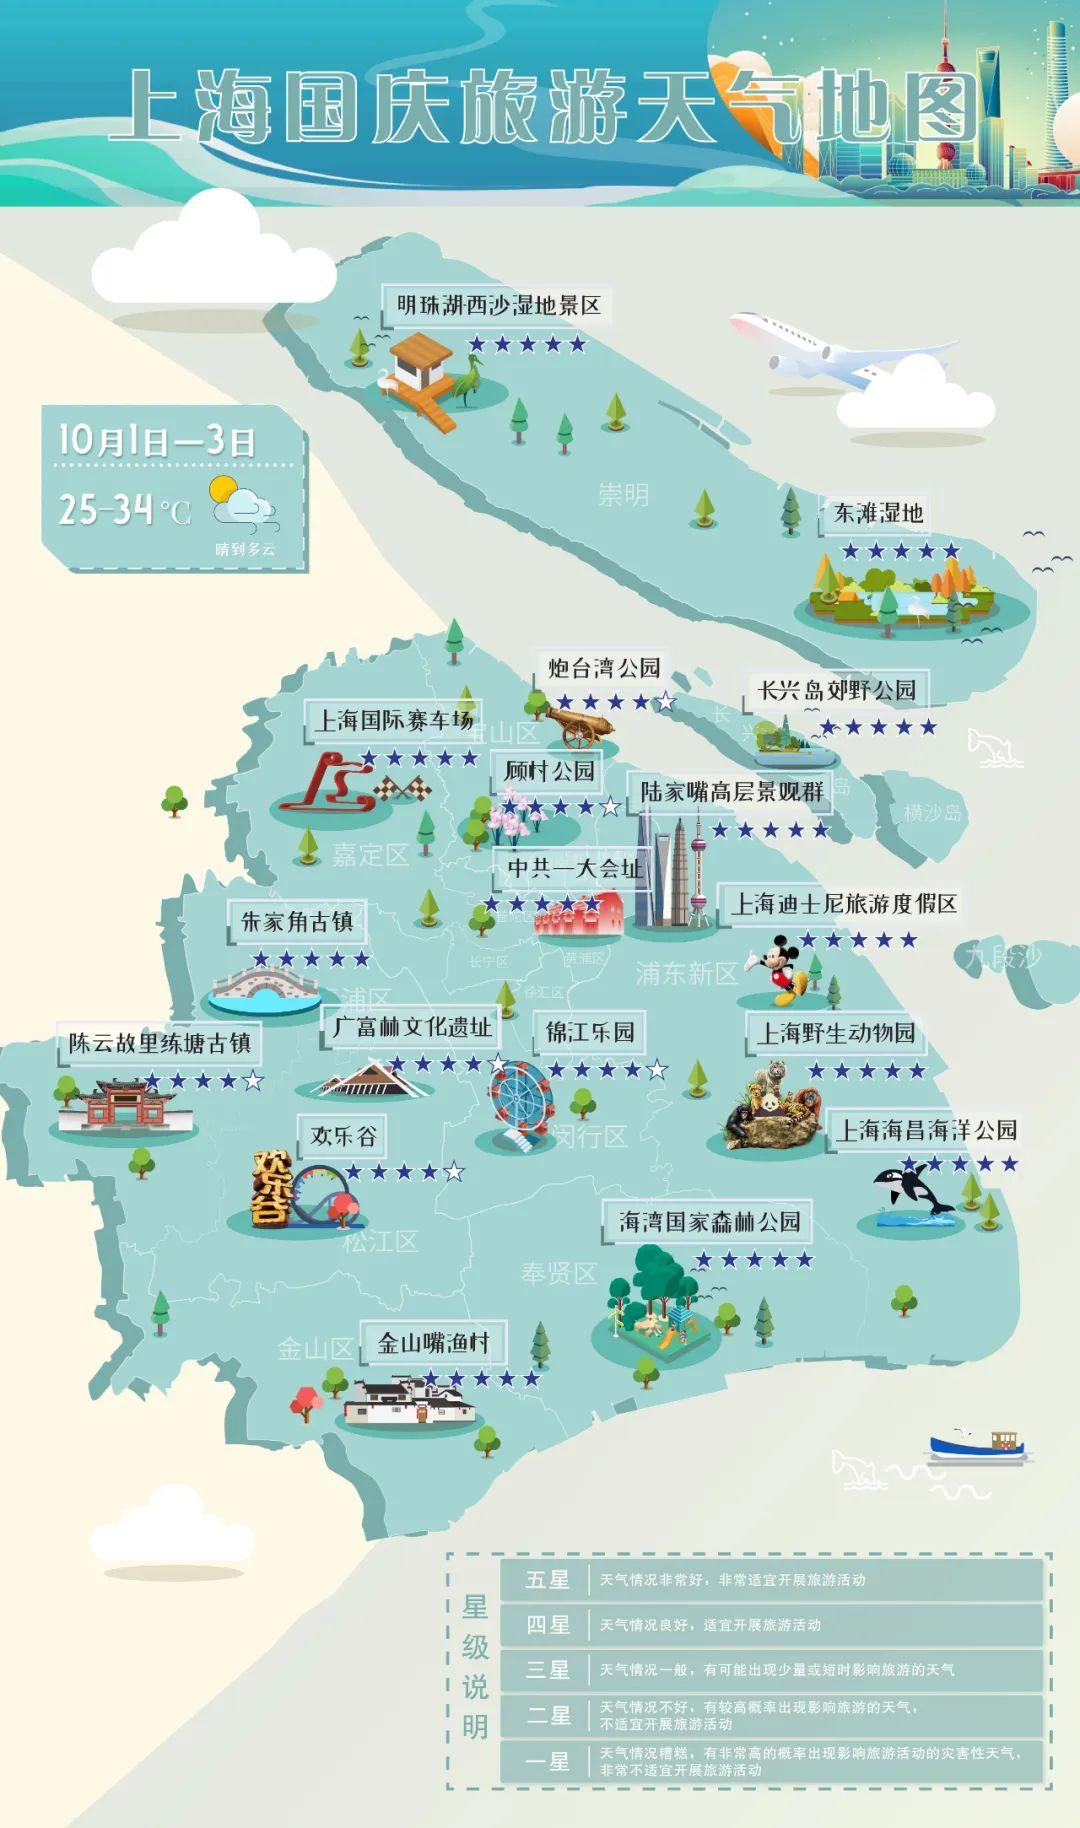 去哪儿?上海国庆旅游天气地图发布,推荐这些五星景点